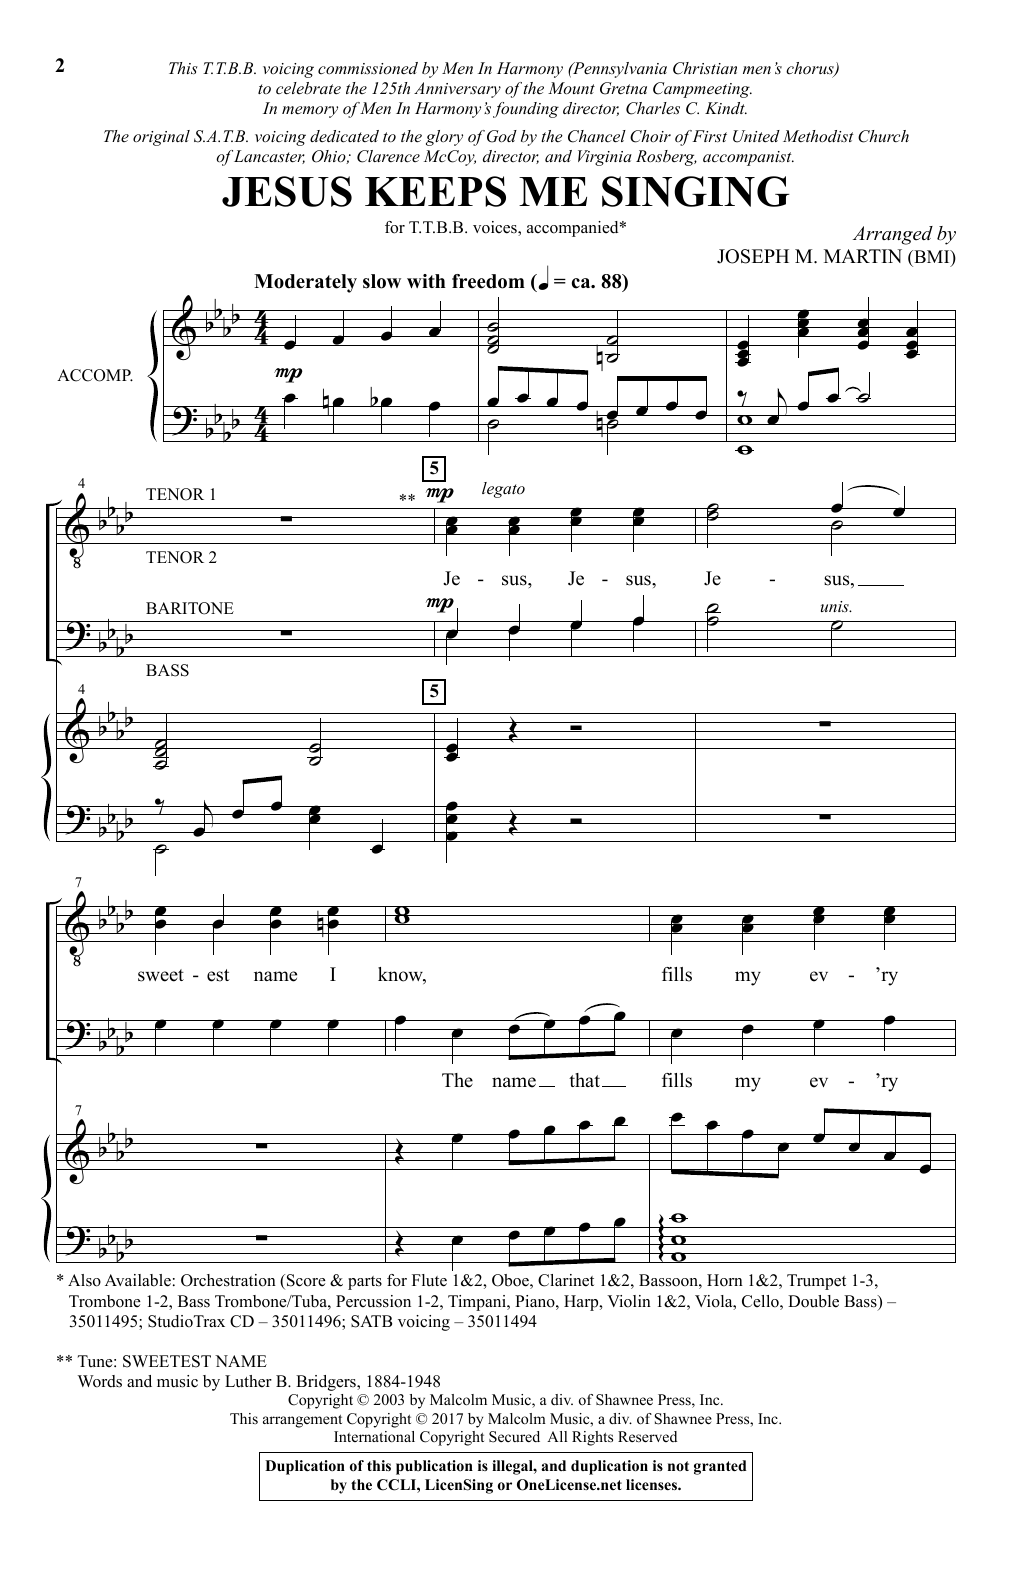 Joseph M. Martin Jesus Keeps Me Singing Sheet Music Notes & Chords for TTBB - Download or Print PDF